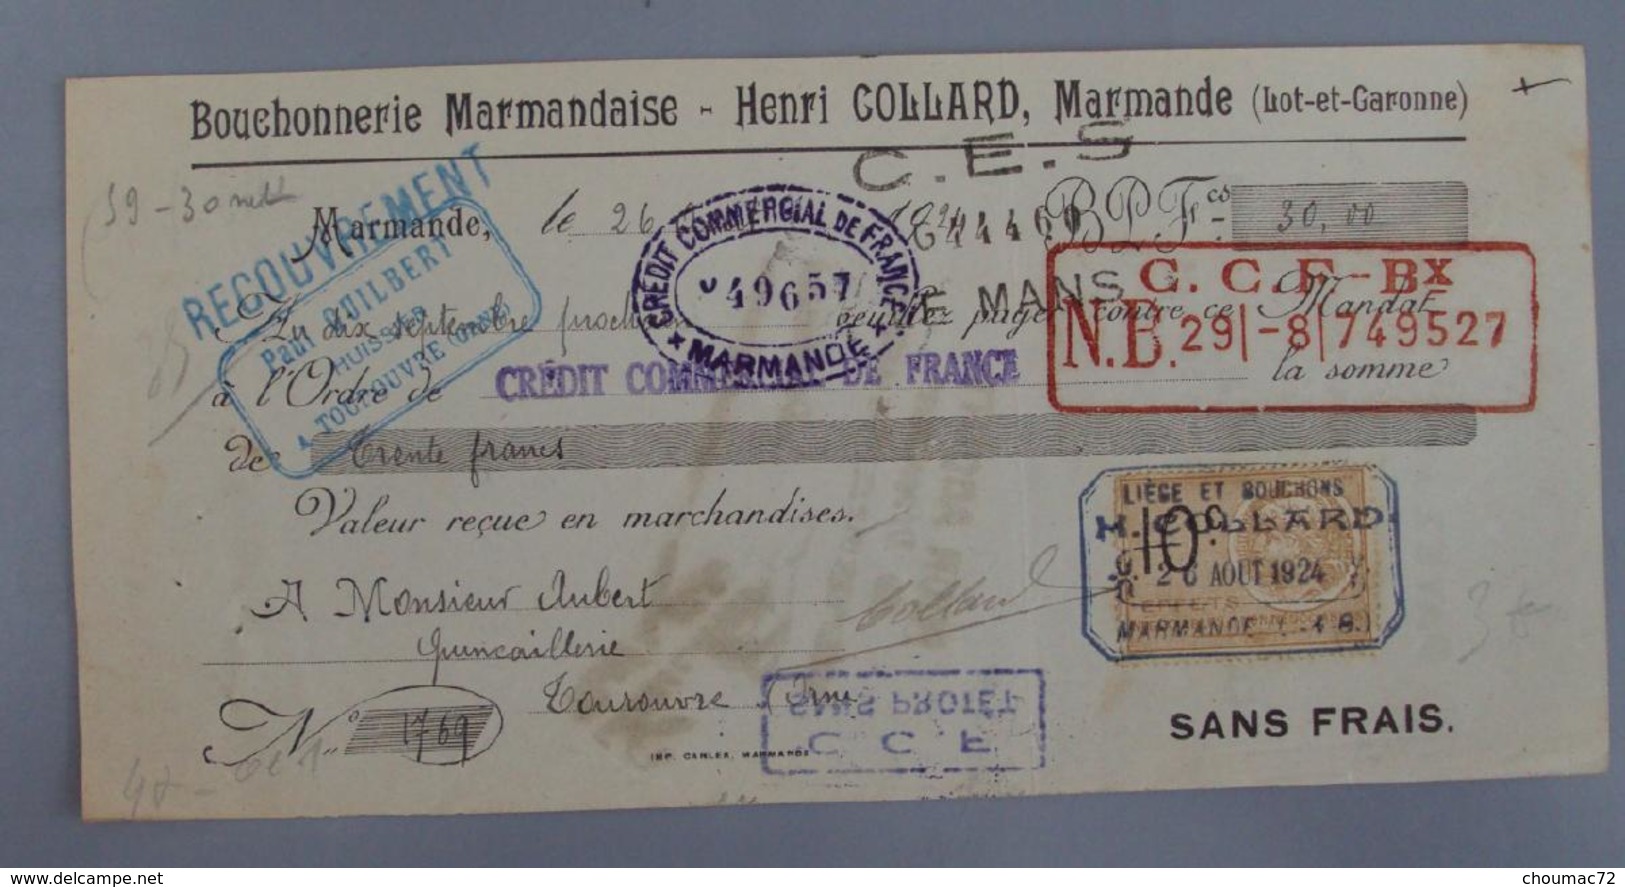 Lettre De Change 47 001, Mandat Lot Et Garonne - Marmande - Bouchonnerie Marmandaise, Timbre Fiscal - Bills Of Exchange